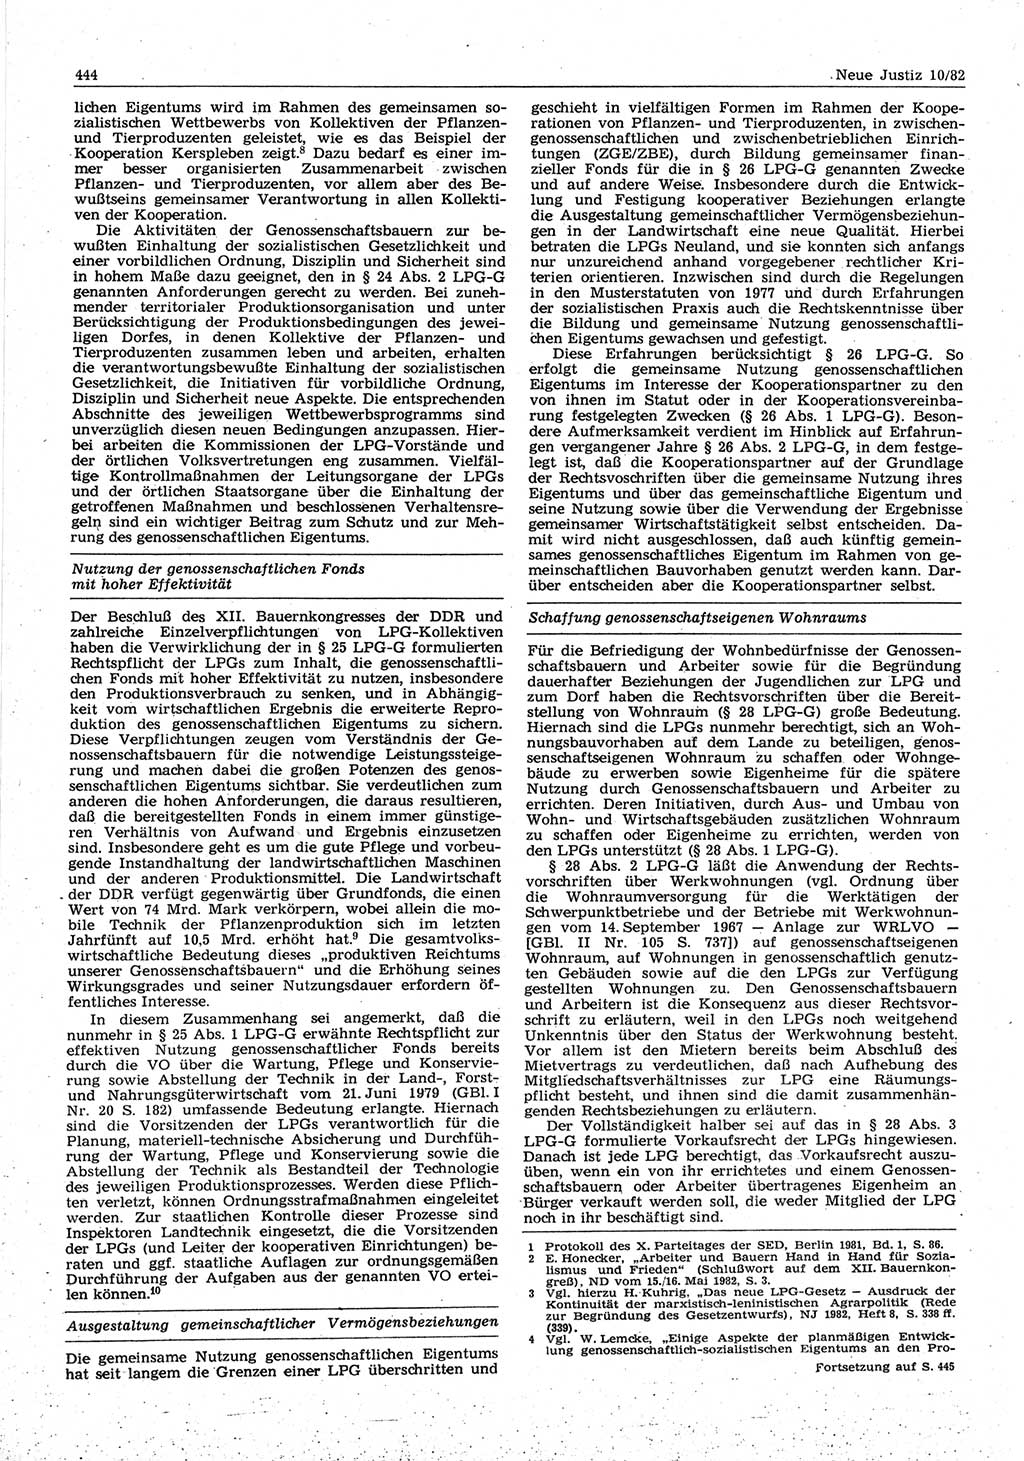 Neue Justiz (NJ), Zeitschrift für sozialistisches Recht und Gesetzlichkeit [Deutsche Demokratische Republik (DDR)], 36. Jahrgang 1982, Seite 444 (NJ DDR 1982, S. 444)